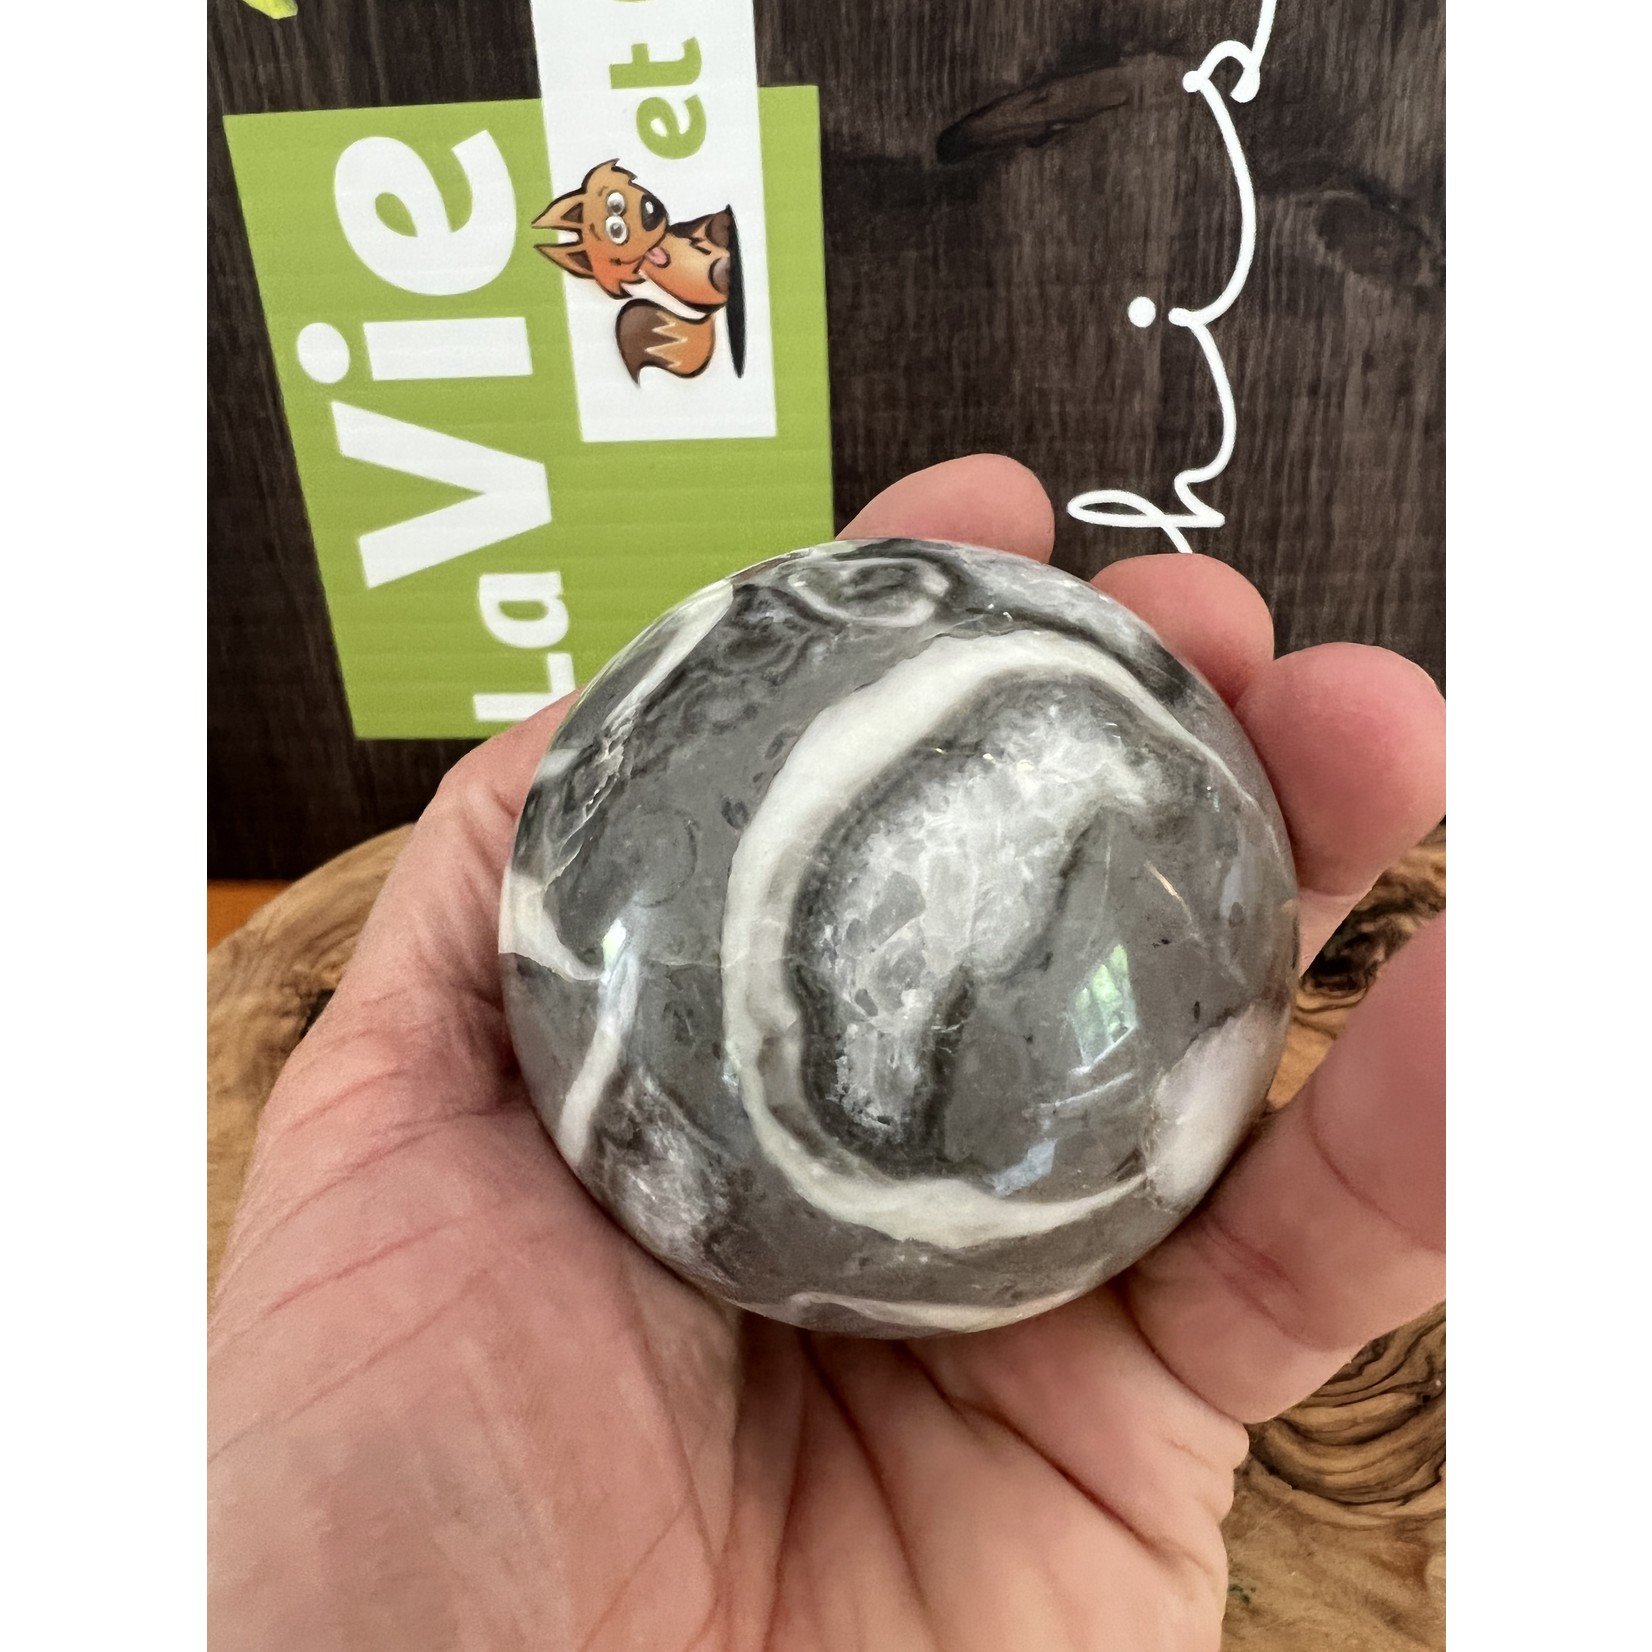 surprising thousand eye jasper sphere, shell jasper sphere, is often used for protection and grounding